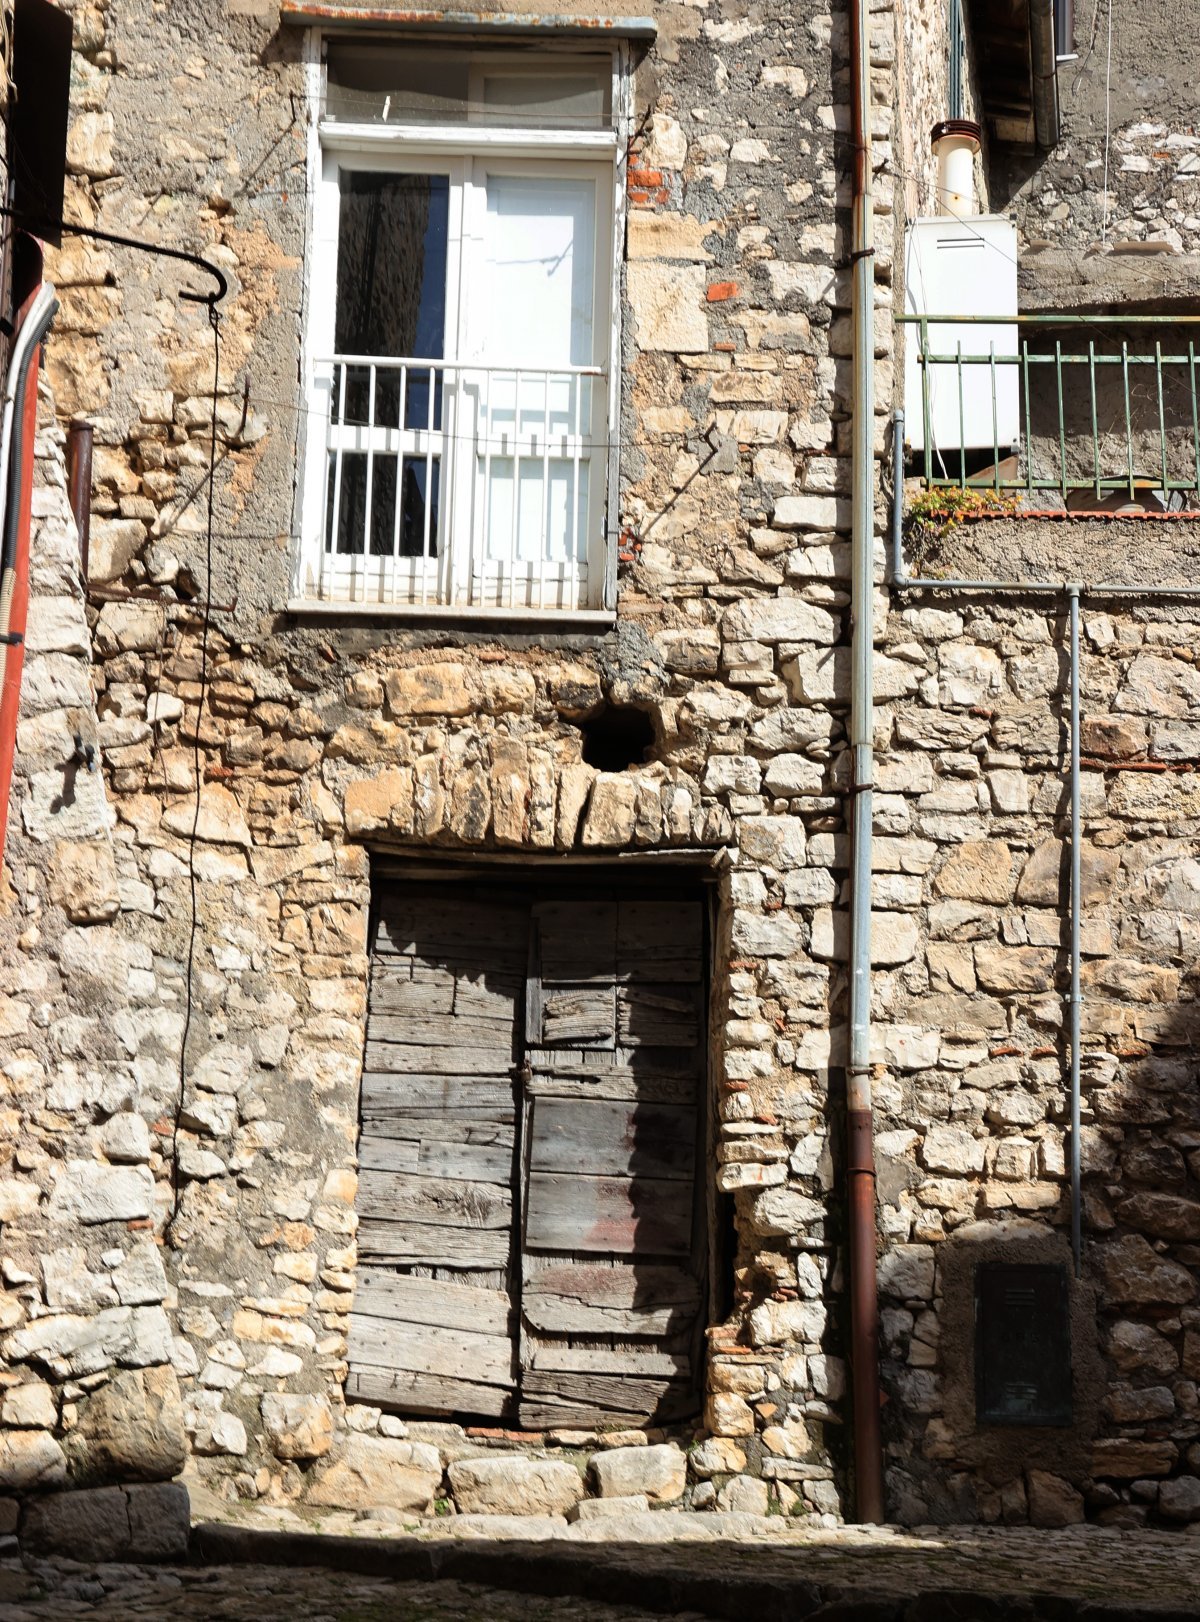 8일(현지 시간) 이탈리아 중부 마엔차시에서 1유로 프로젝트로 판매될 예정인 빈집의 모습. 마엔차시는 2021년부터 방치된 빈집을 재활용하기 위한 프로젝트를 진행하고 있다. 행정안전부 제공